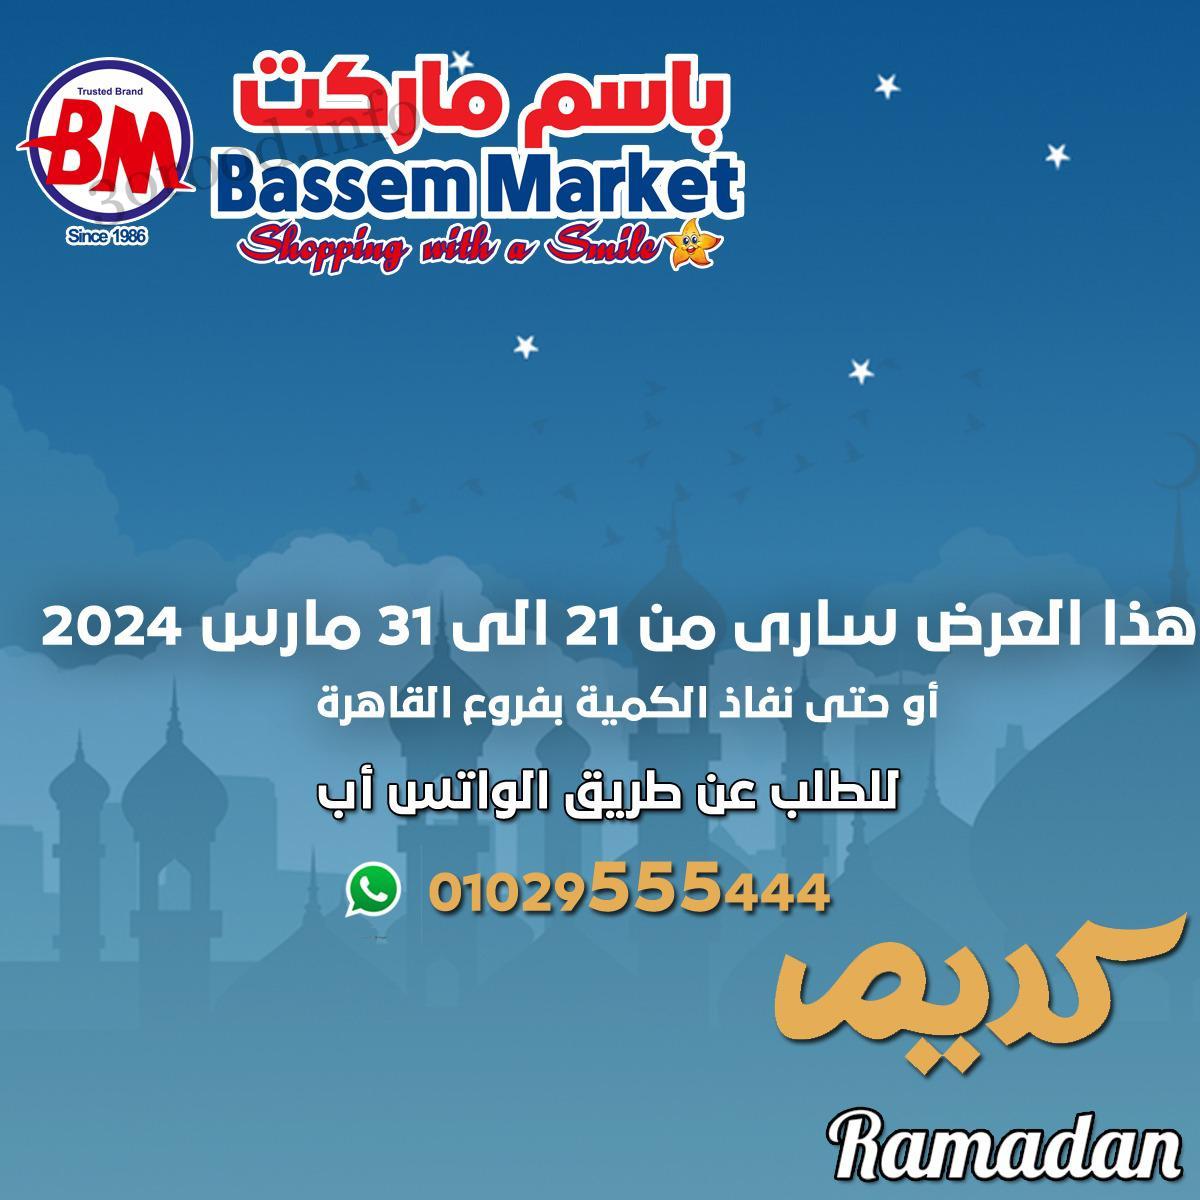 عروض باسم ماركت القاهرة من 21 مارس حتى 31 مارس 2024 عروض رمضان